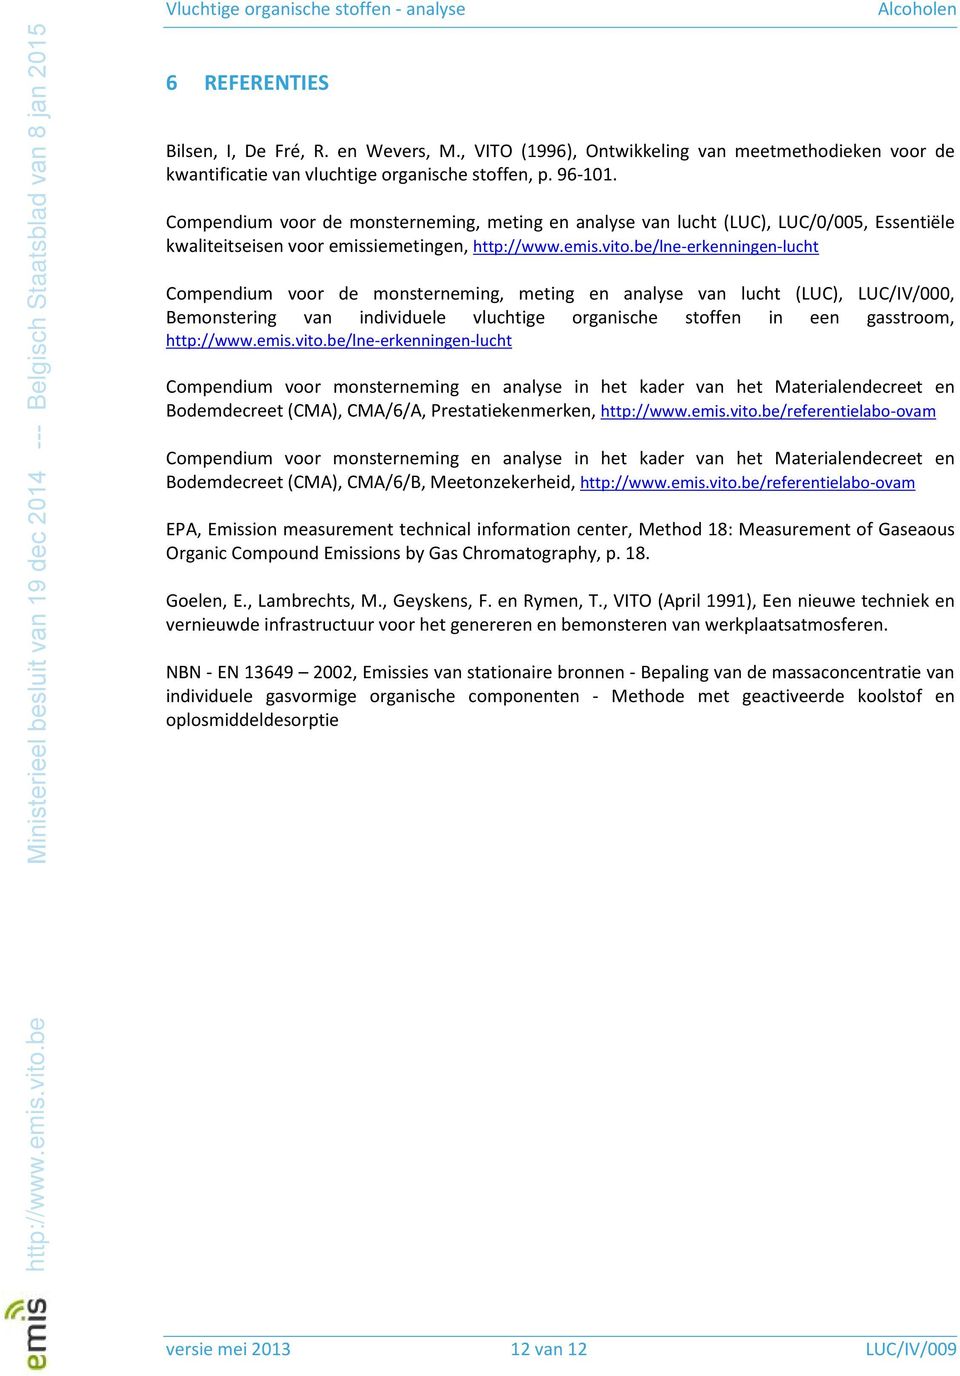 be/lne-erkenningen-lucht Compendium voor de monsterneming, meting en analyse van lucht (LUC), LUC/IV/000, Bemonstering van individuele vluchtige organische stoffen in een gasstroom, http://www.emis.